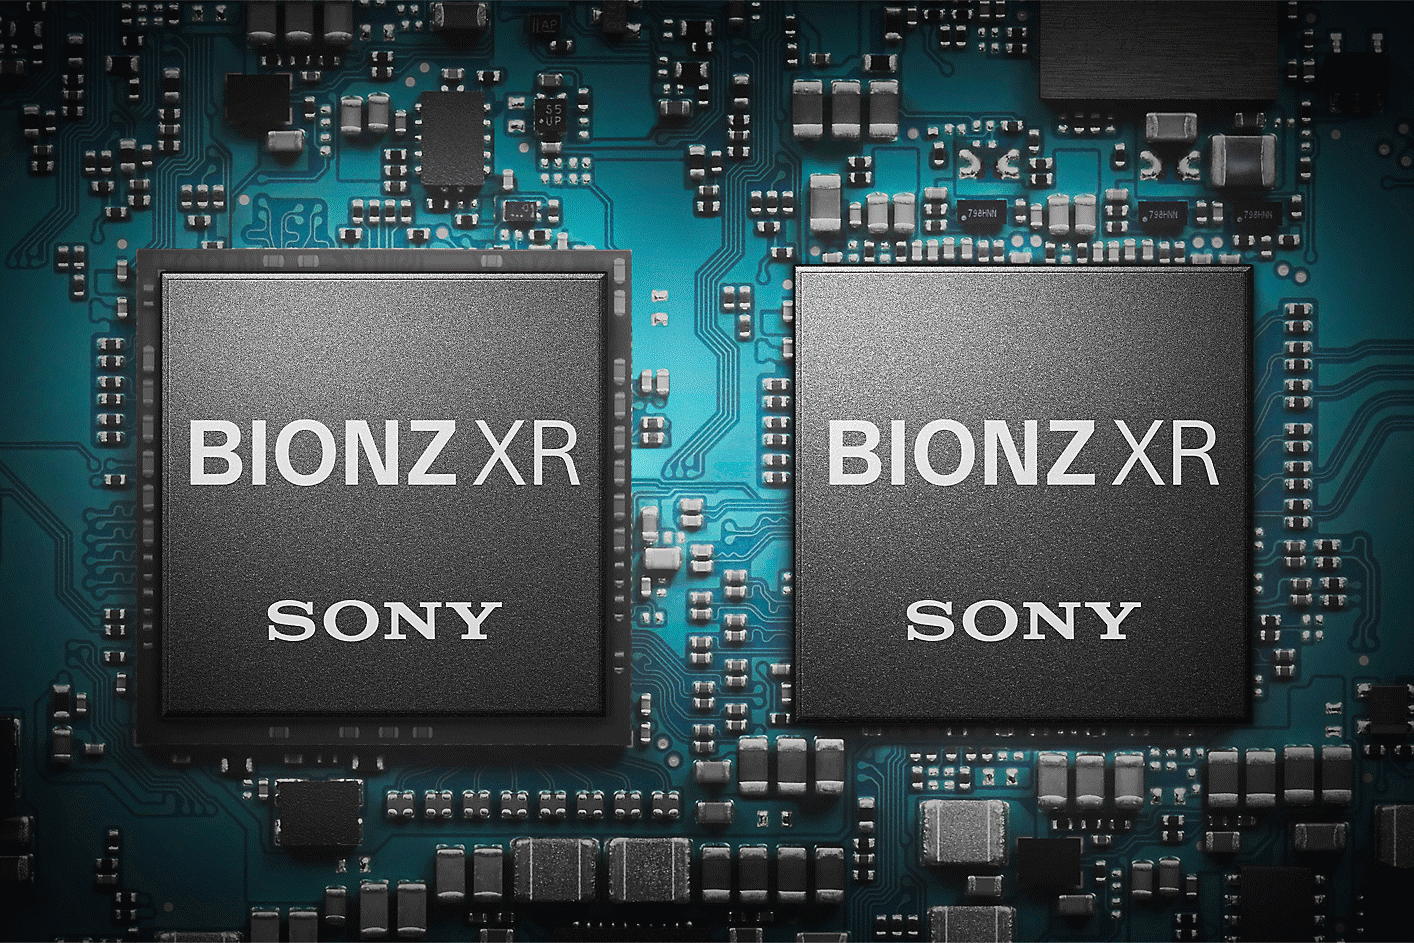 Snímek obrazového procesoru BIONZ XR na zařízení